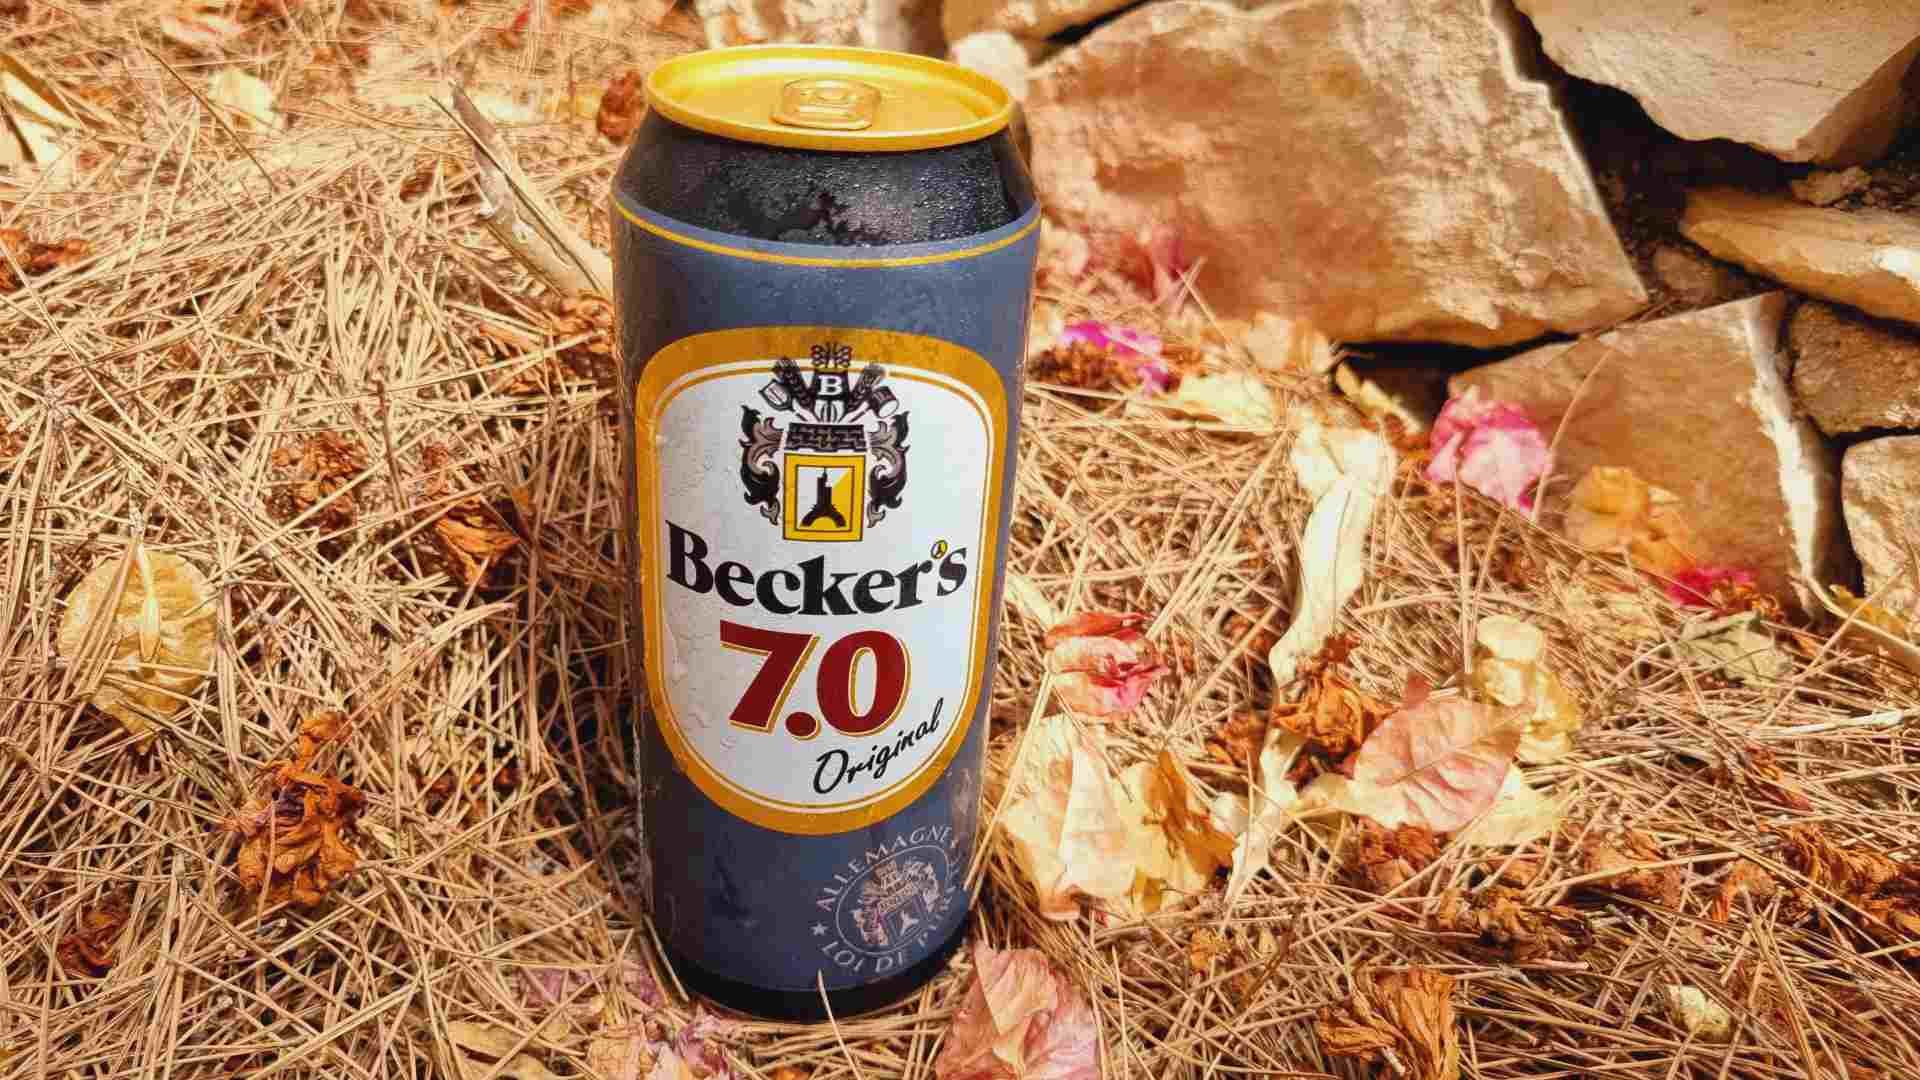 Beckers 7.0 Original Bierwertung.de Bierwertung Biertest2